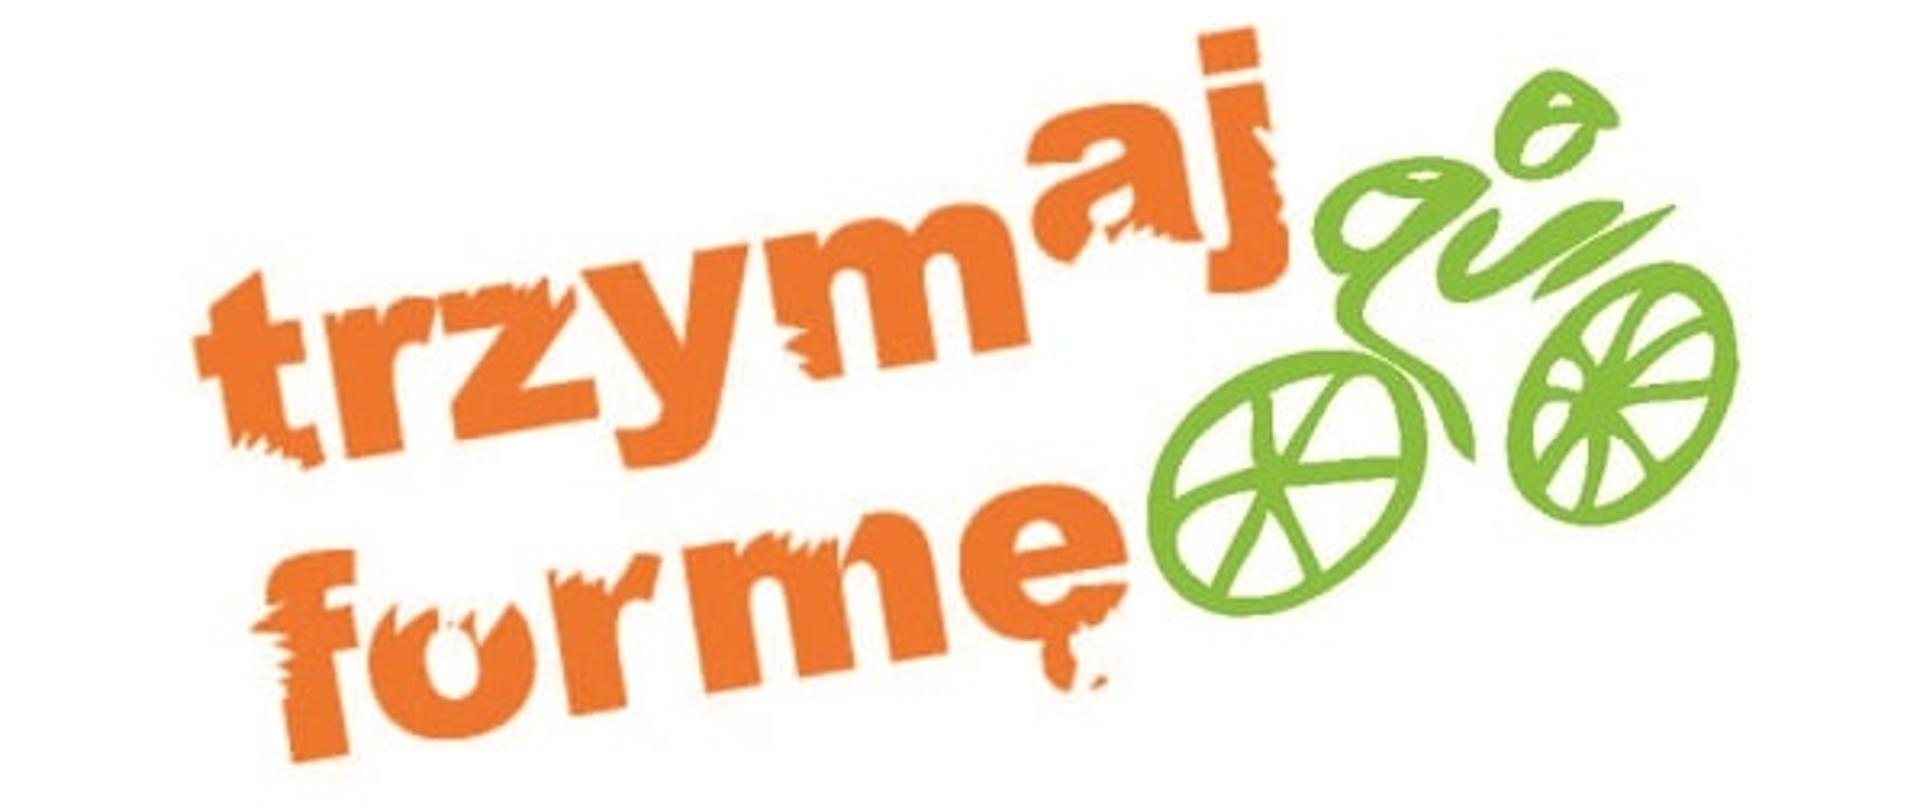 zdjęcie z logo programu z pomarańczową jego nazwą i zielonym rowerem